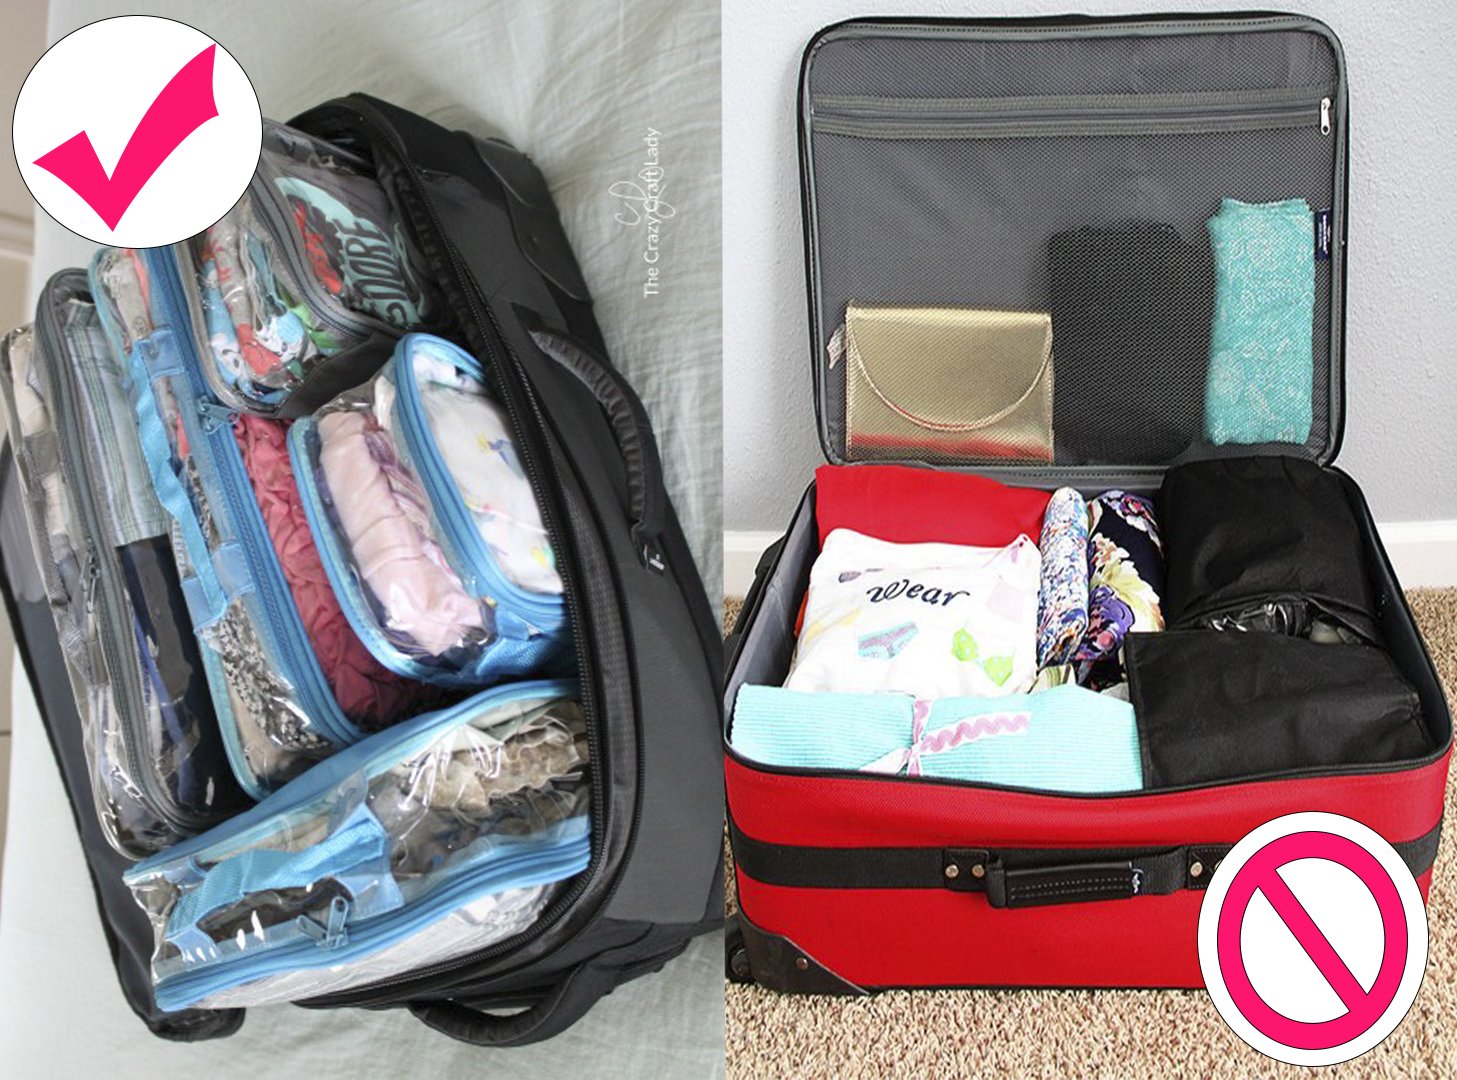 detergente Fuera Puede ser ignorado 10 Formas en las que puedes empacar tu maleta sencillamente